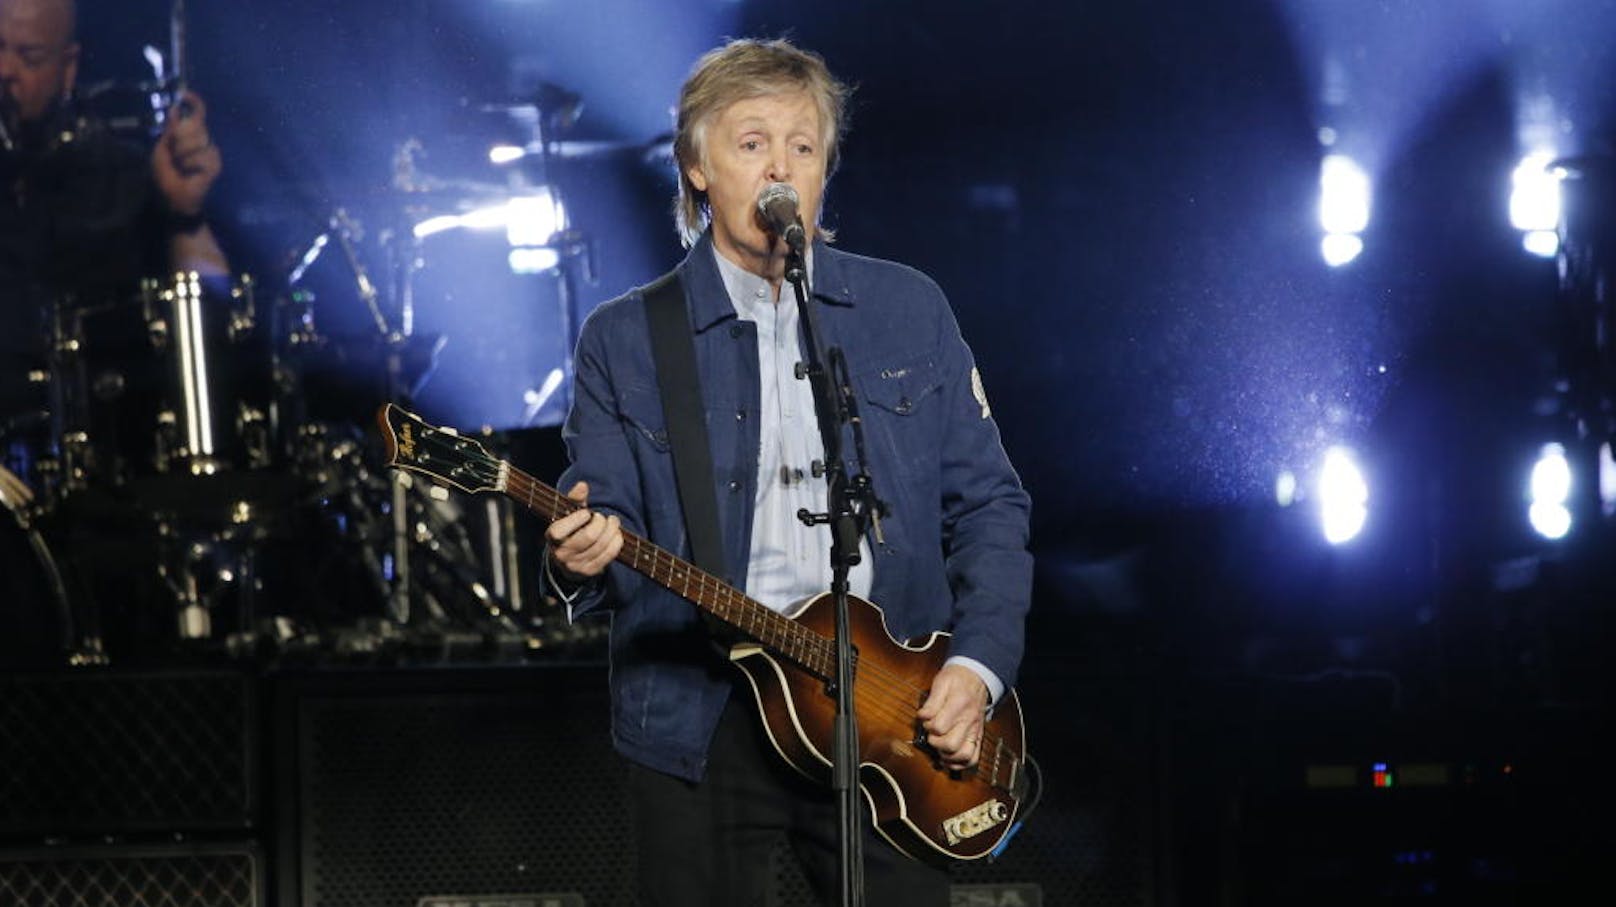 Musik-Legende <strong>Sir Paul McCartney</strong> hat mit seinem neuen Album "McCartney III" auf Anhieb die US-Chartspitze erklommen.